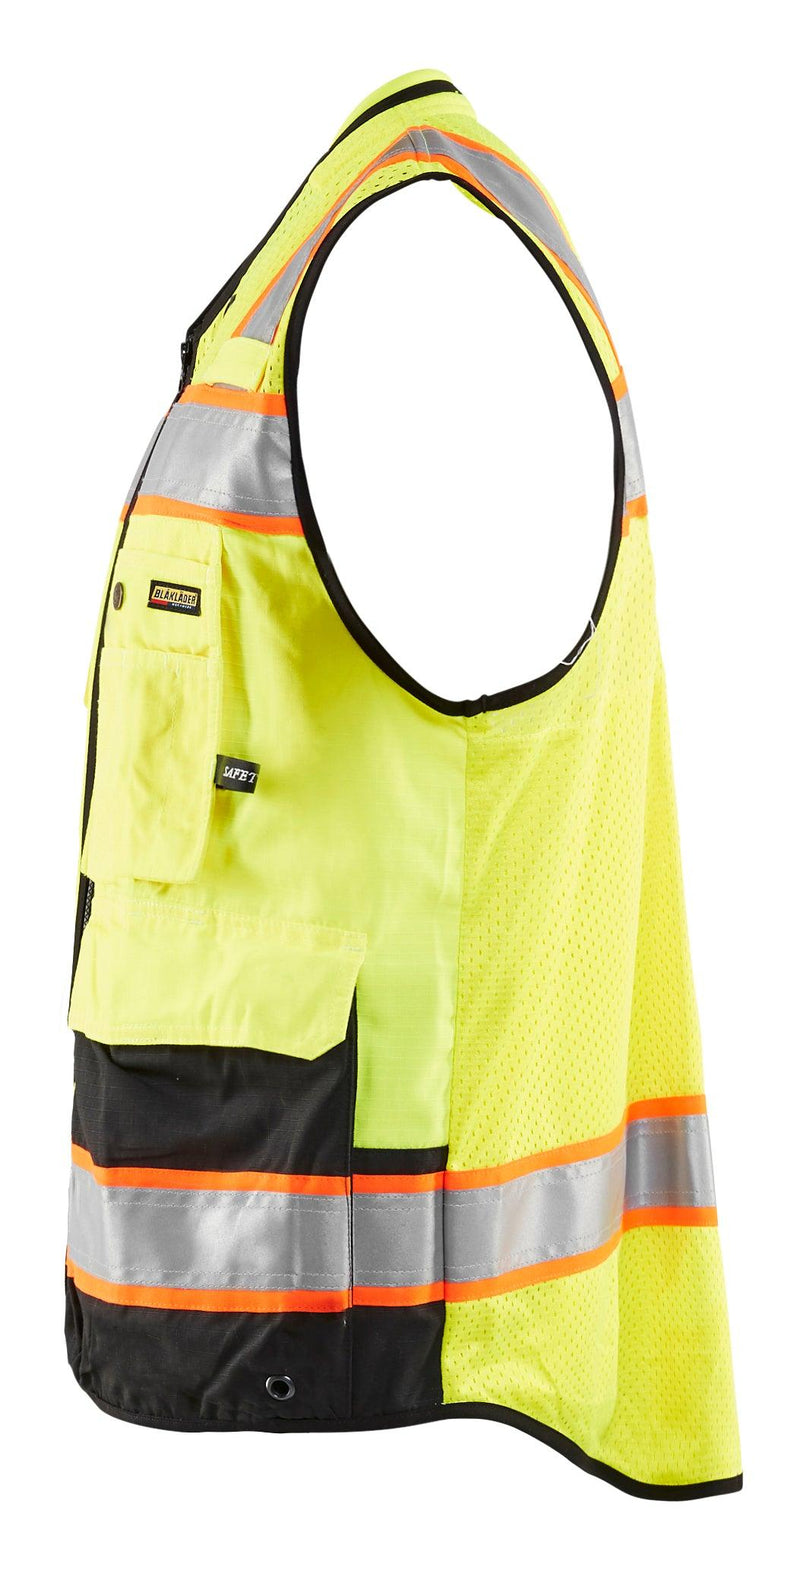 Blaklader 3132 Hi-Vis Surveyor Safety Vest - Yellow Hi-Vis/Black - Trusted Gear Company LLC